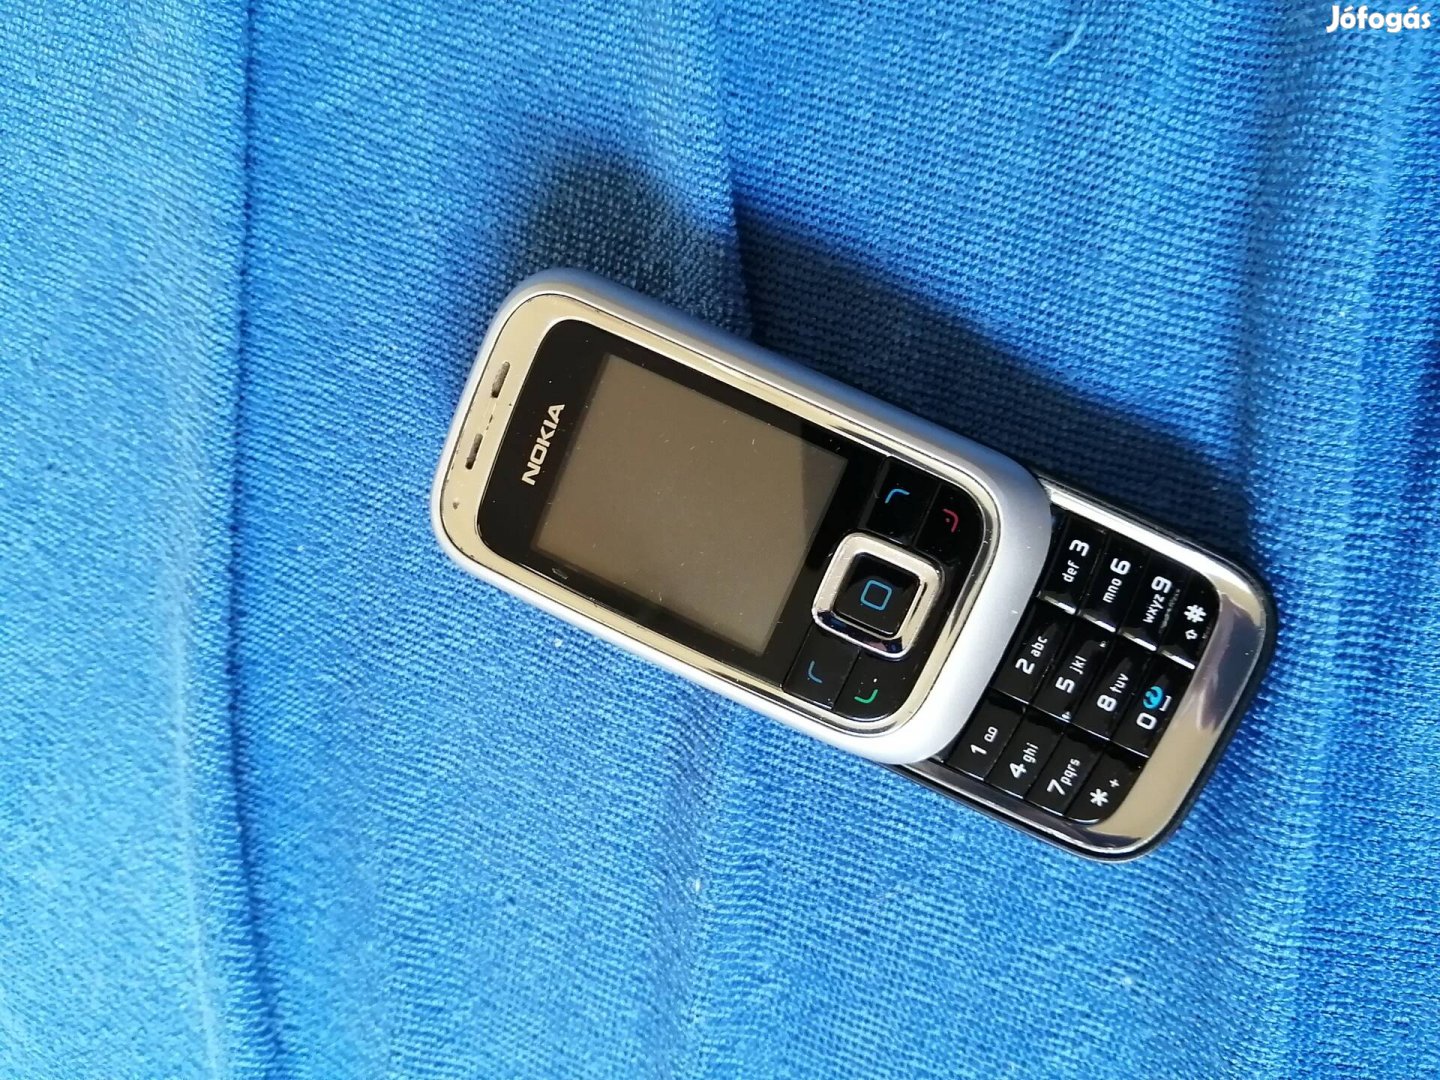 Nokia 6111 yettel eladó 